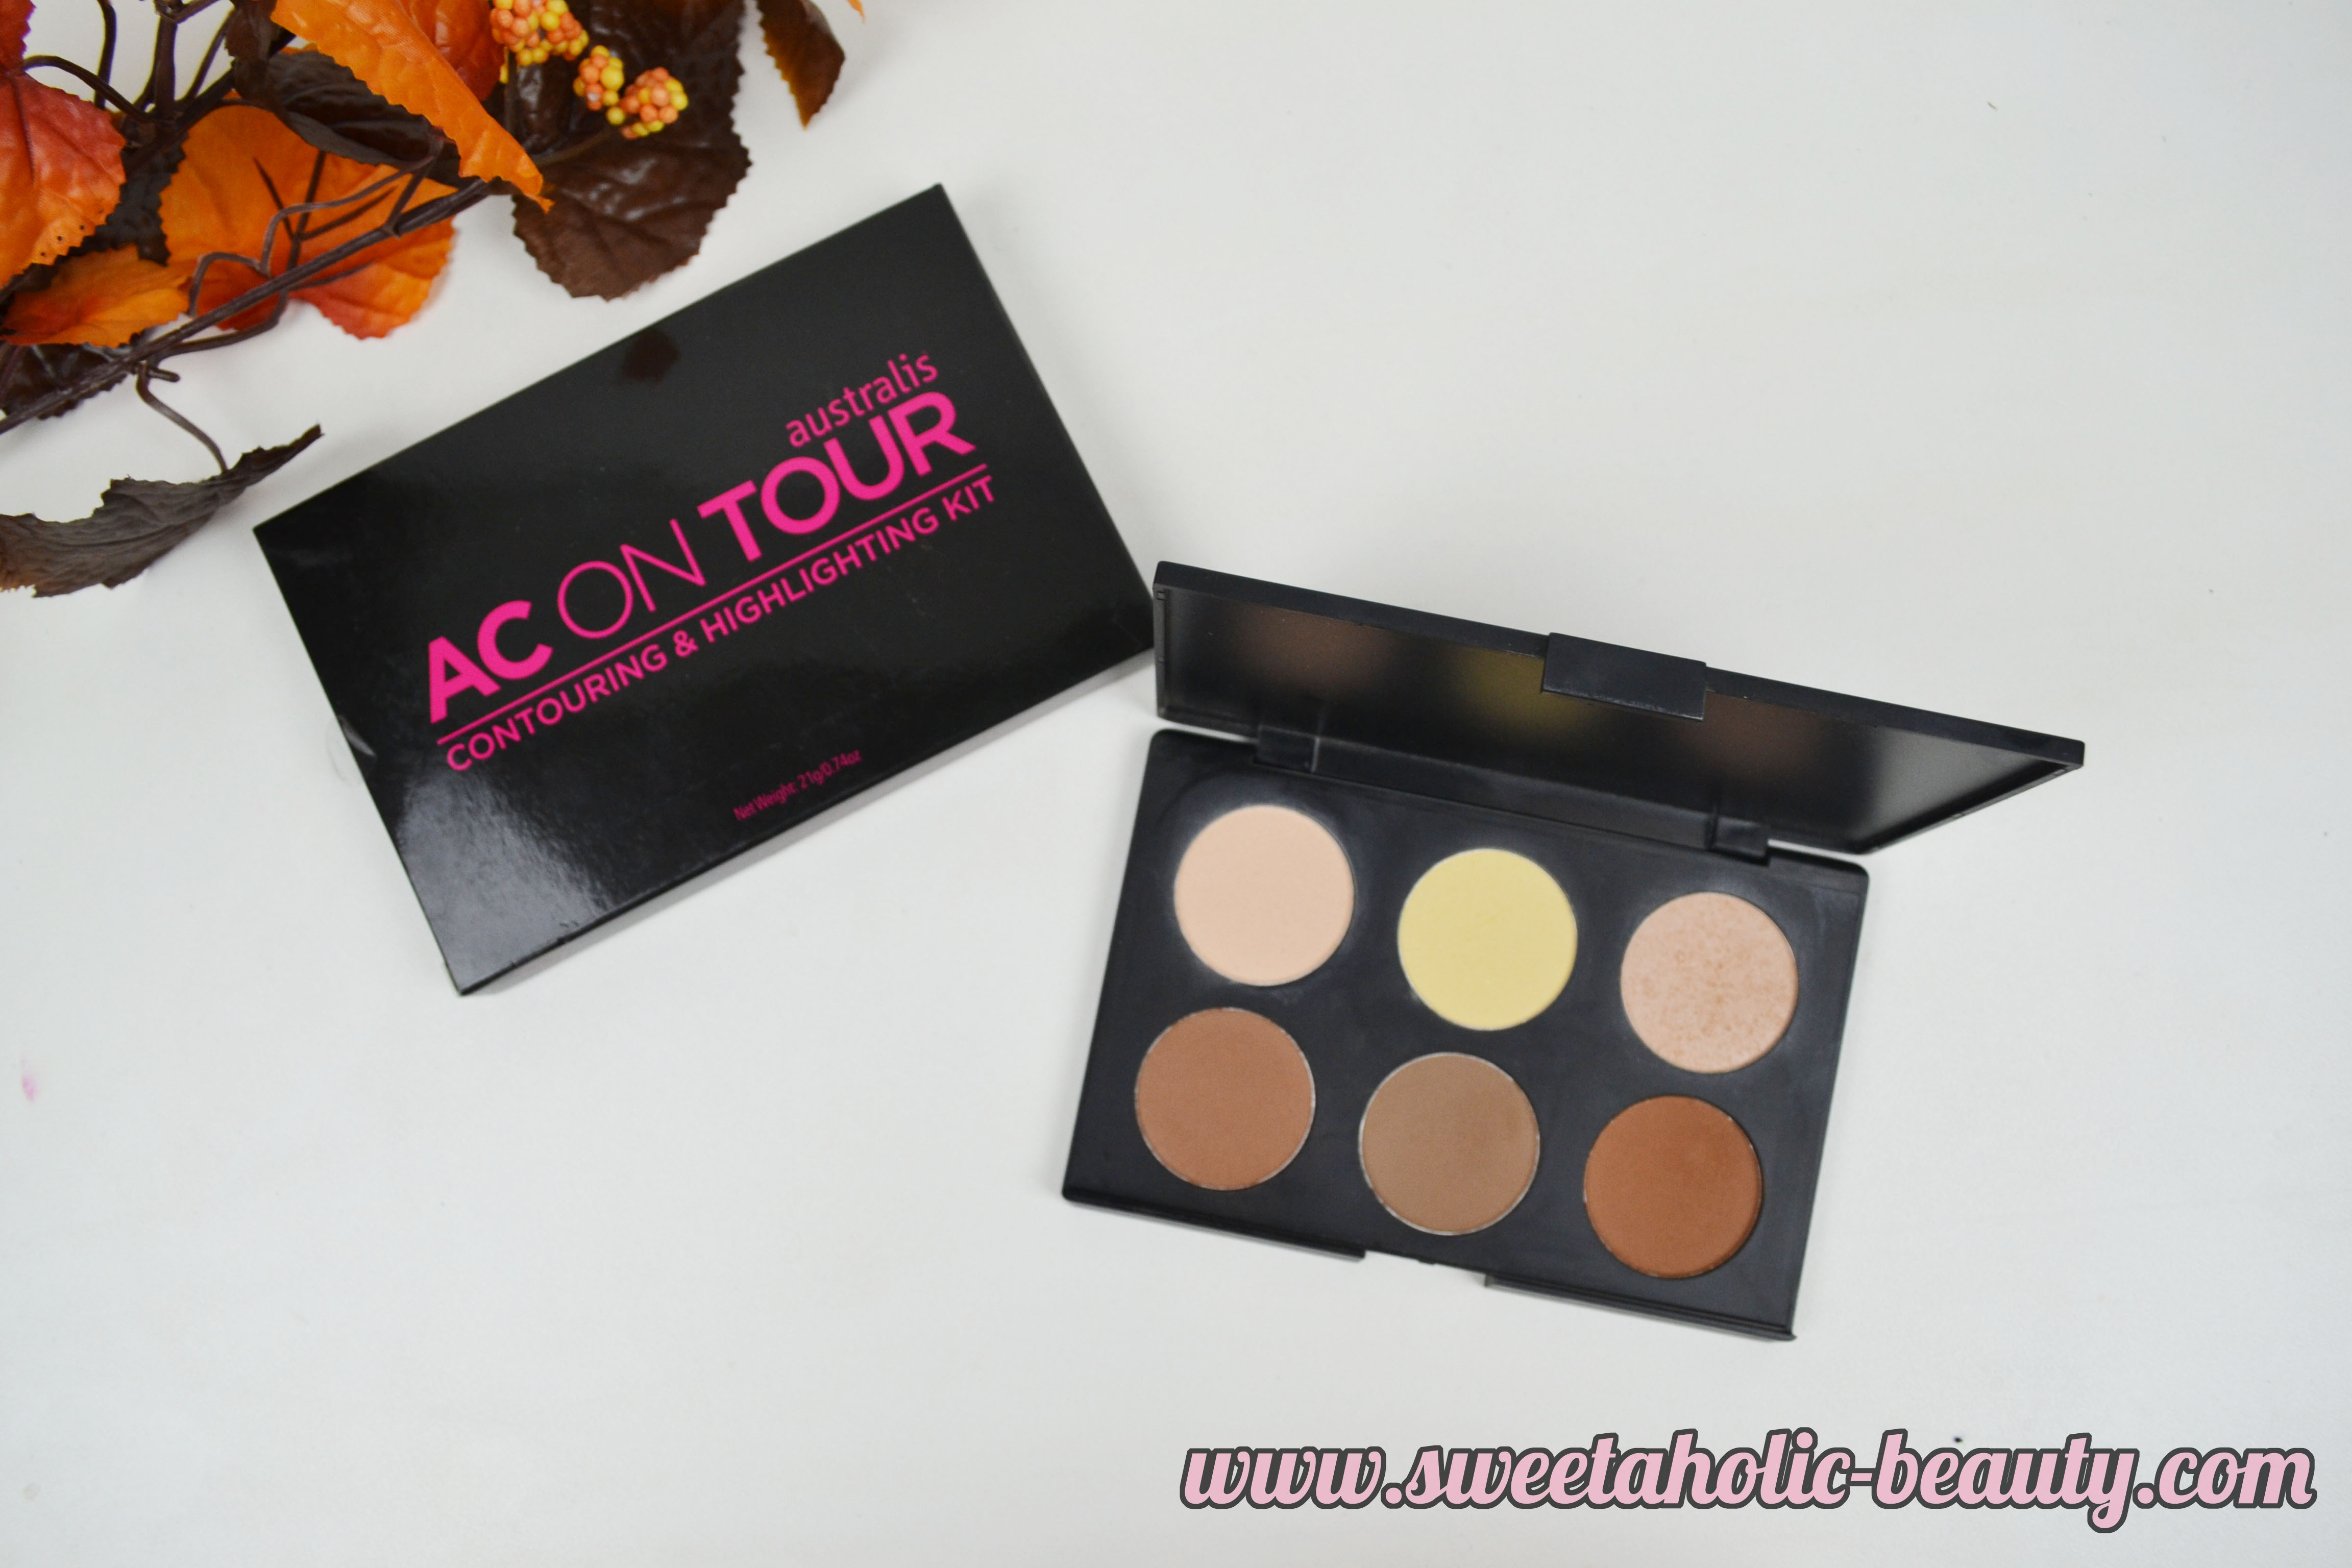 Australis, Australis AC On Tour Contouring and Highlighting Kit, Contouring, Highlighting, Face,Makeup,